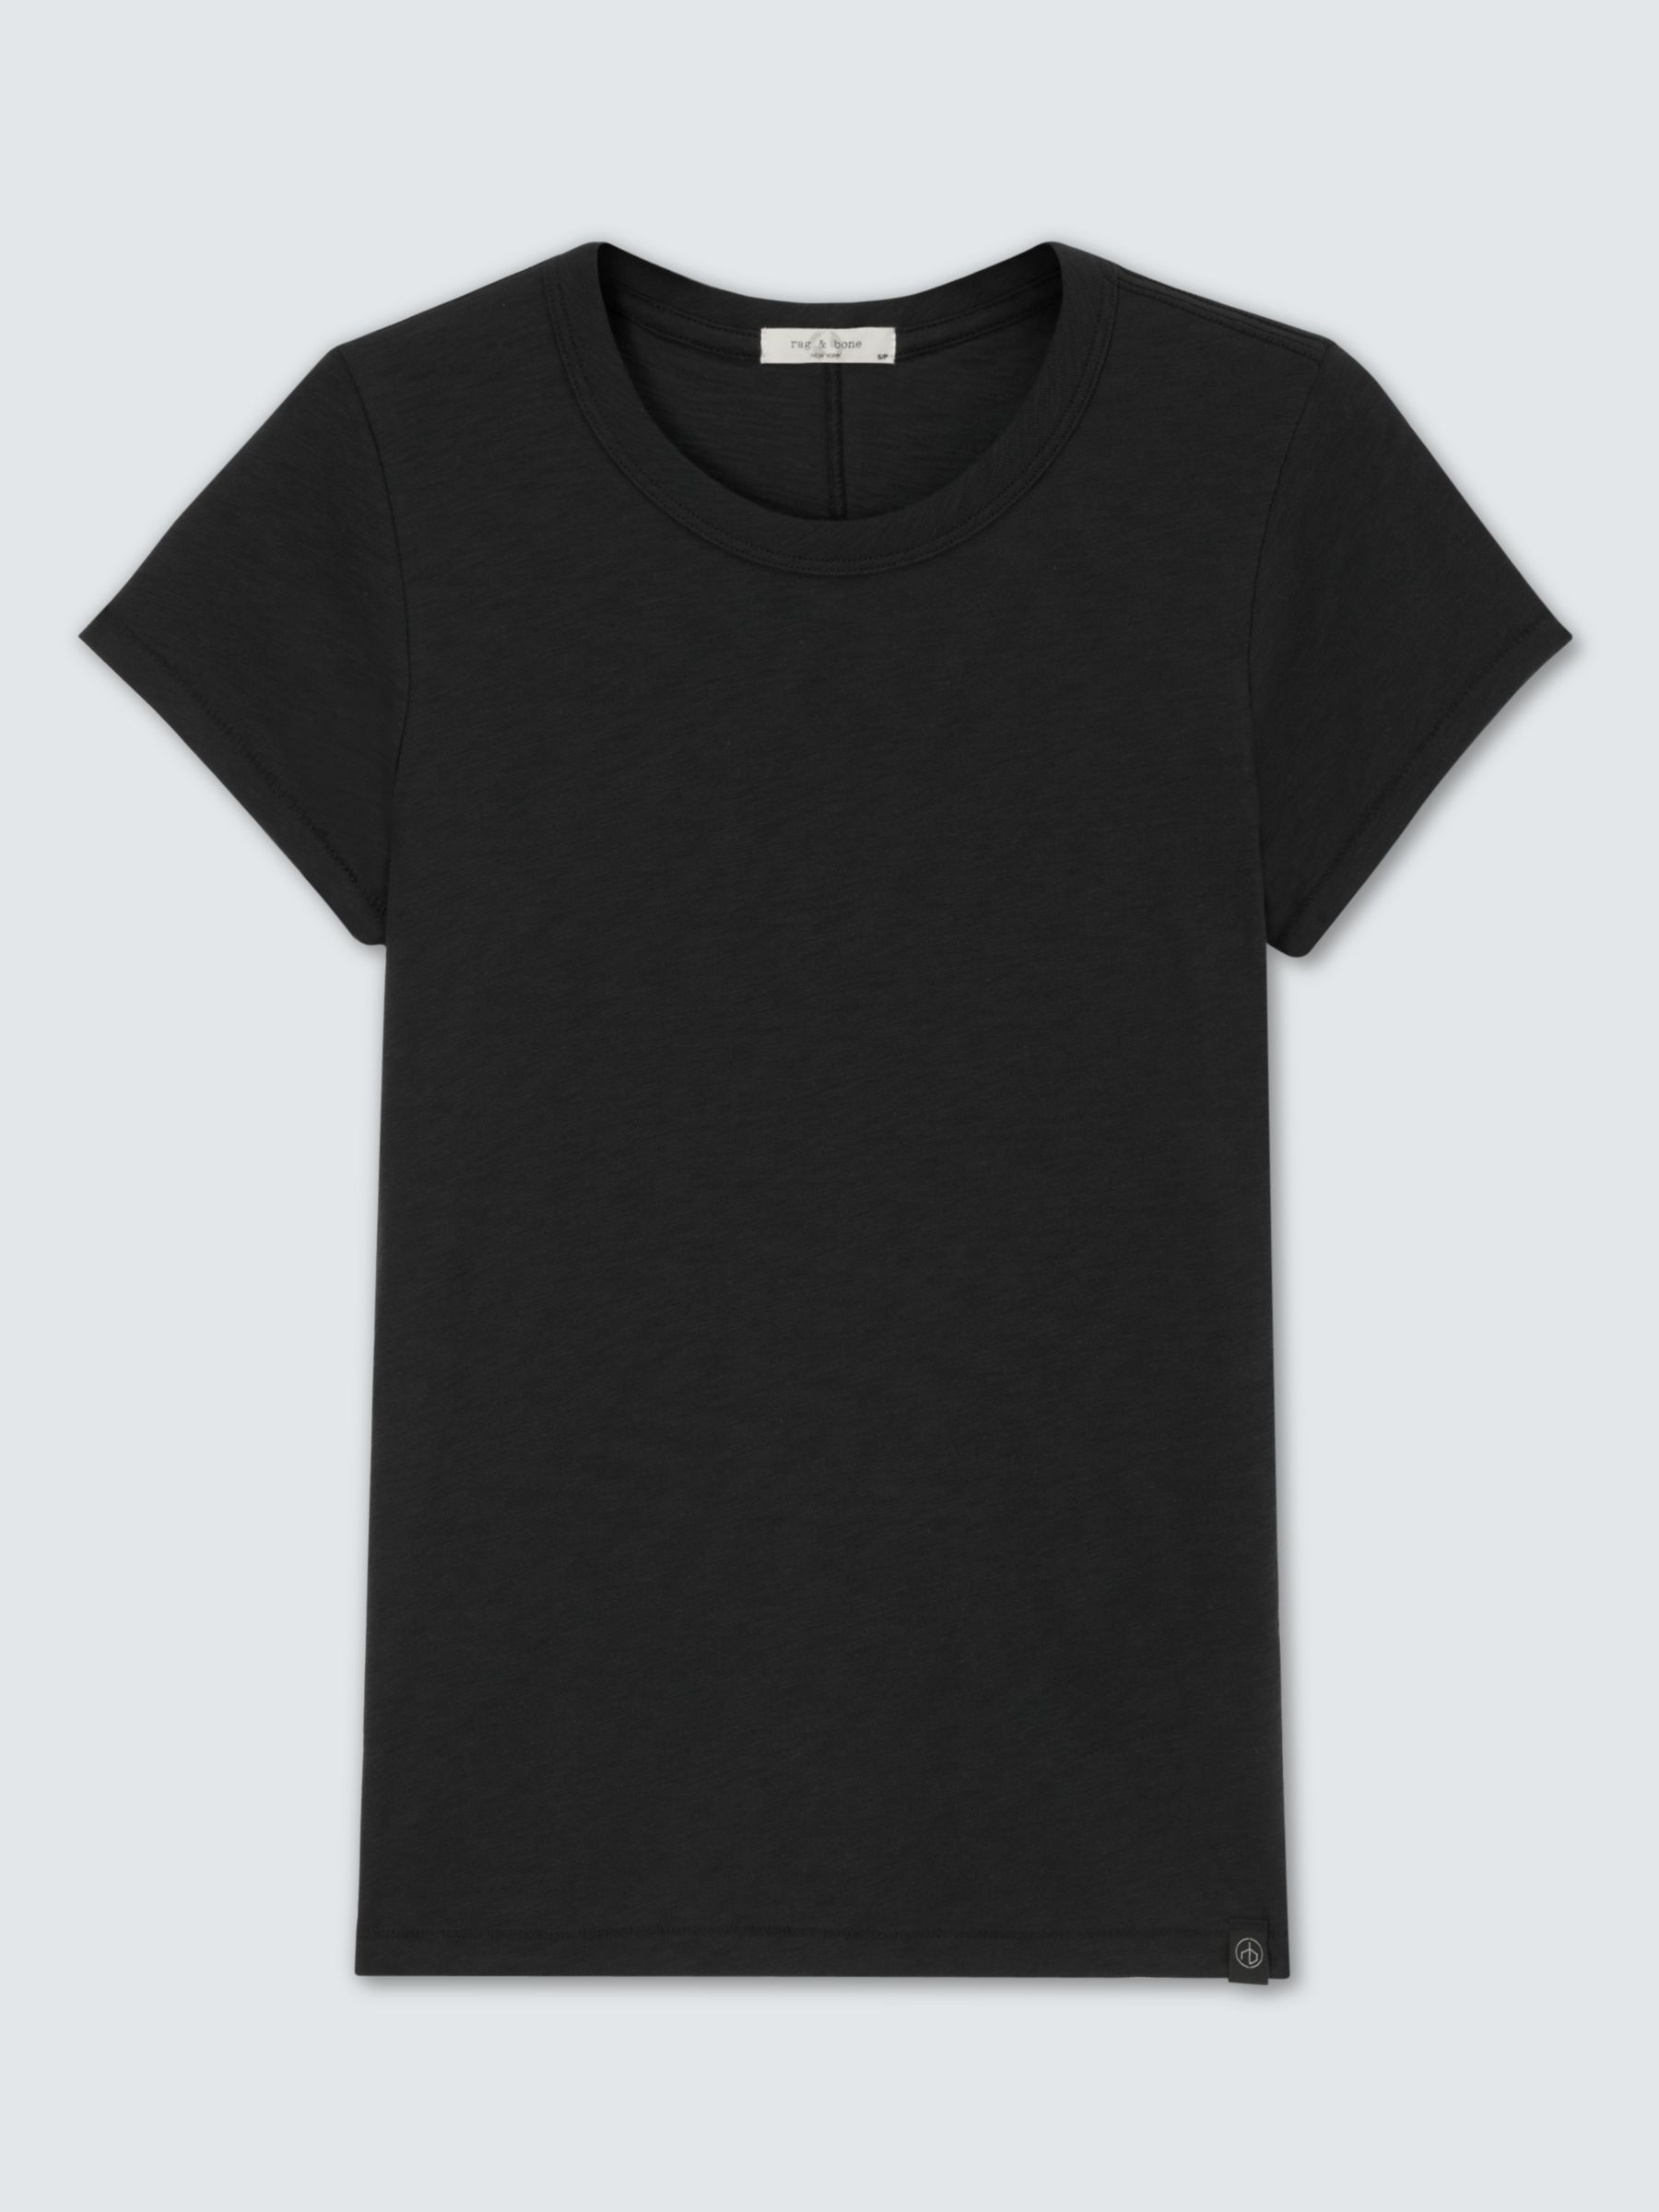 rag & bone The Slub Pima Cotton T-Shirt, Black, XS